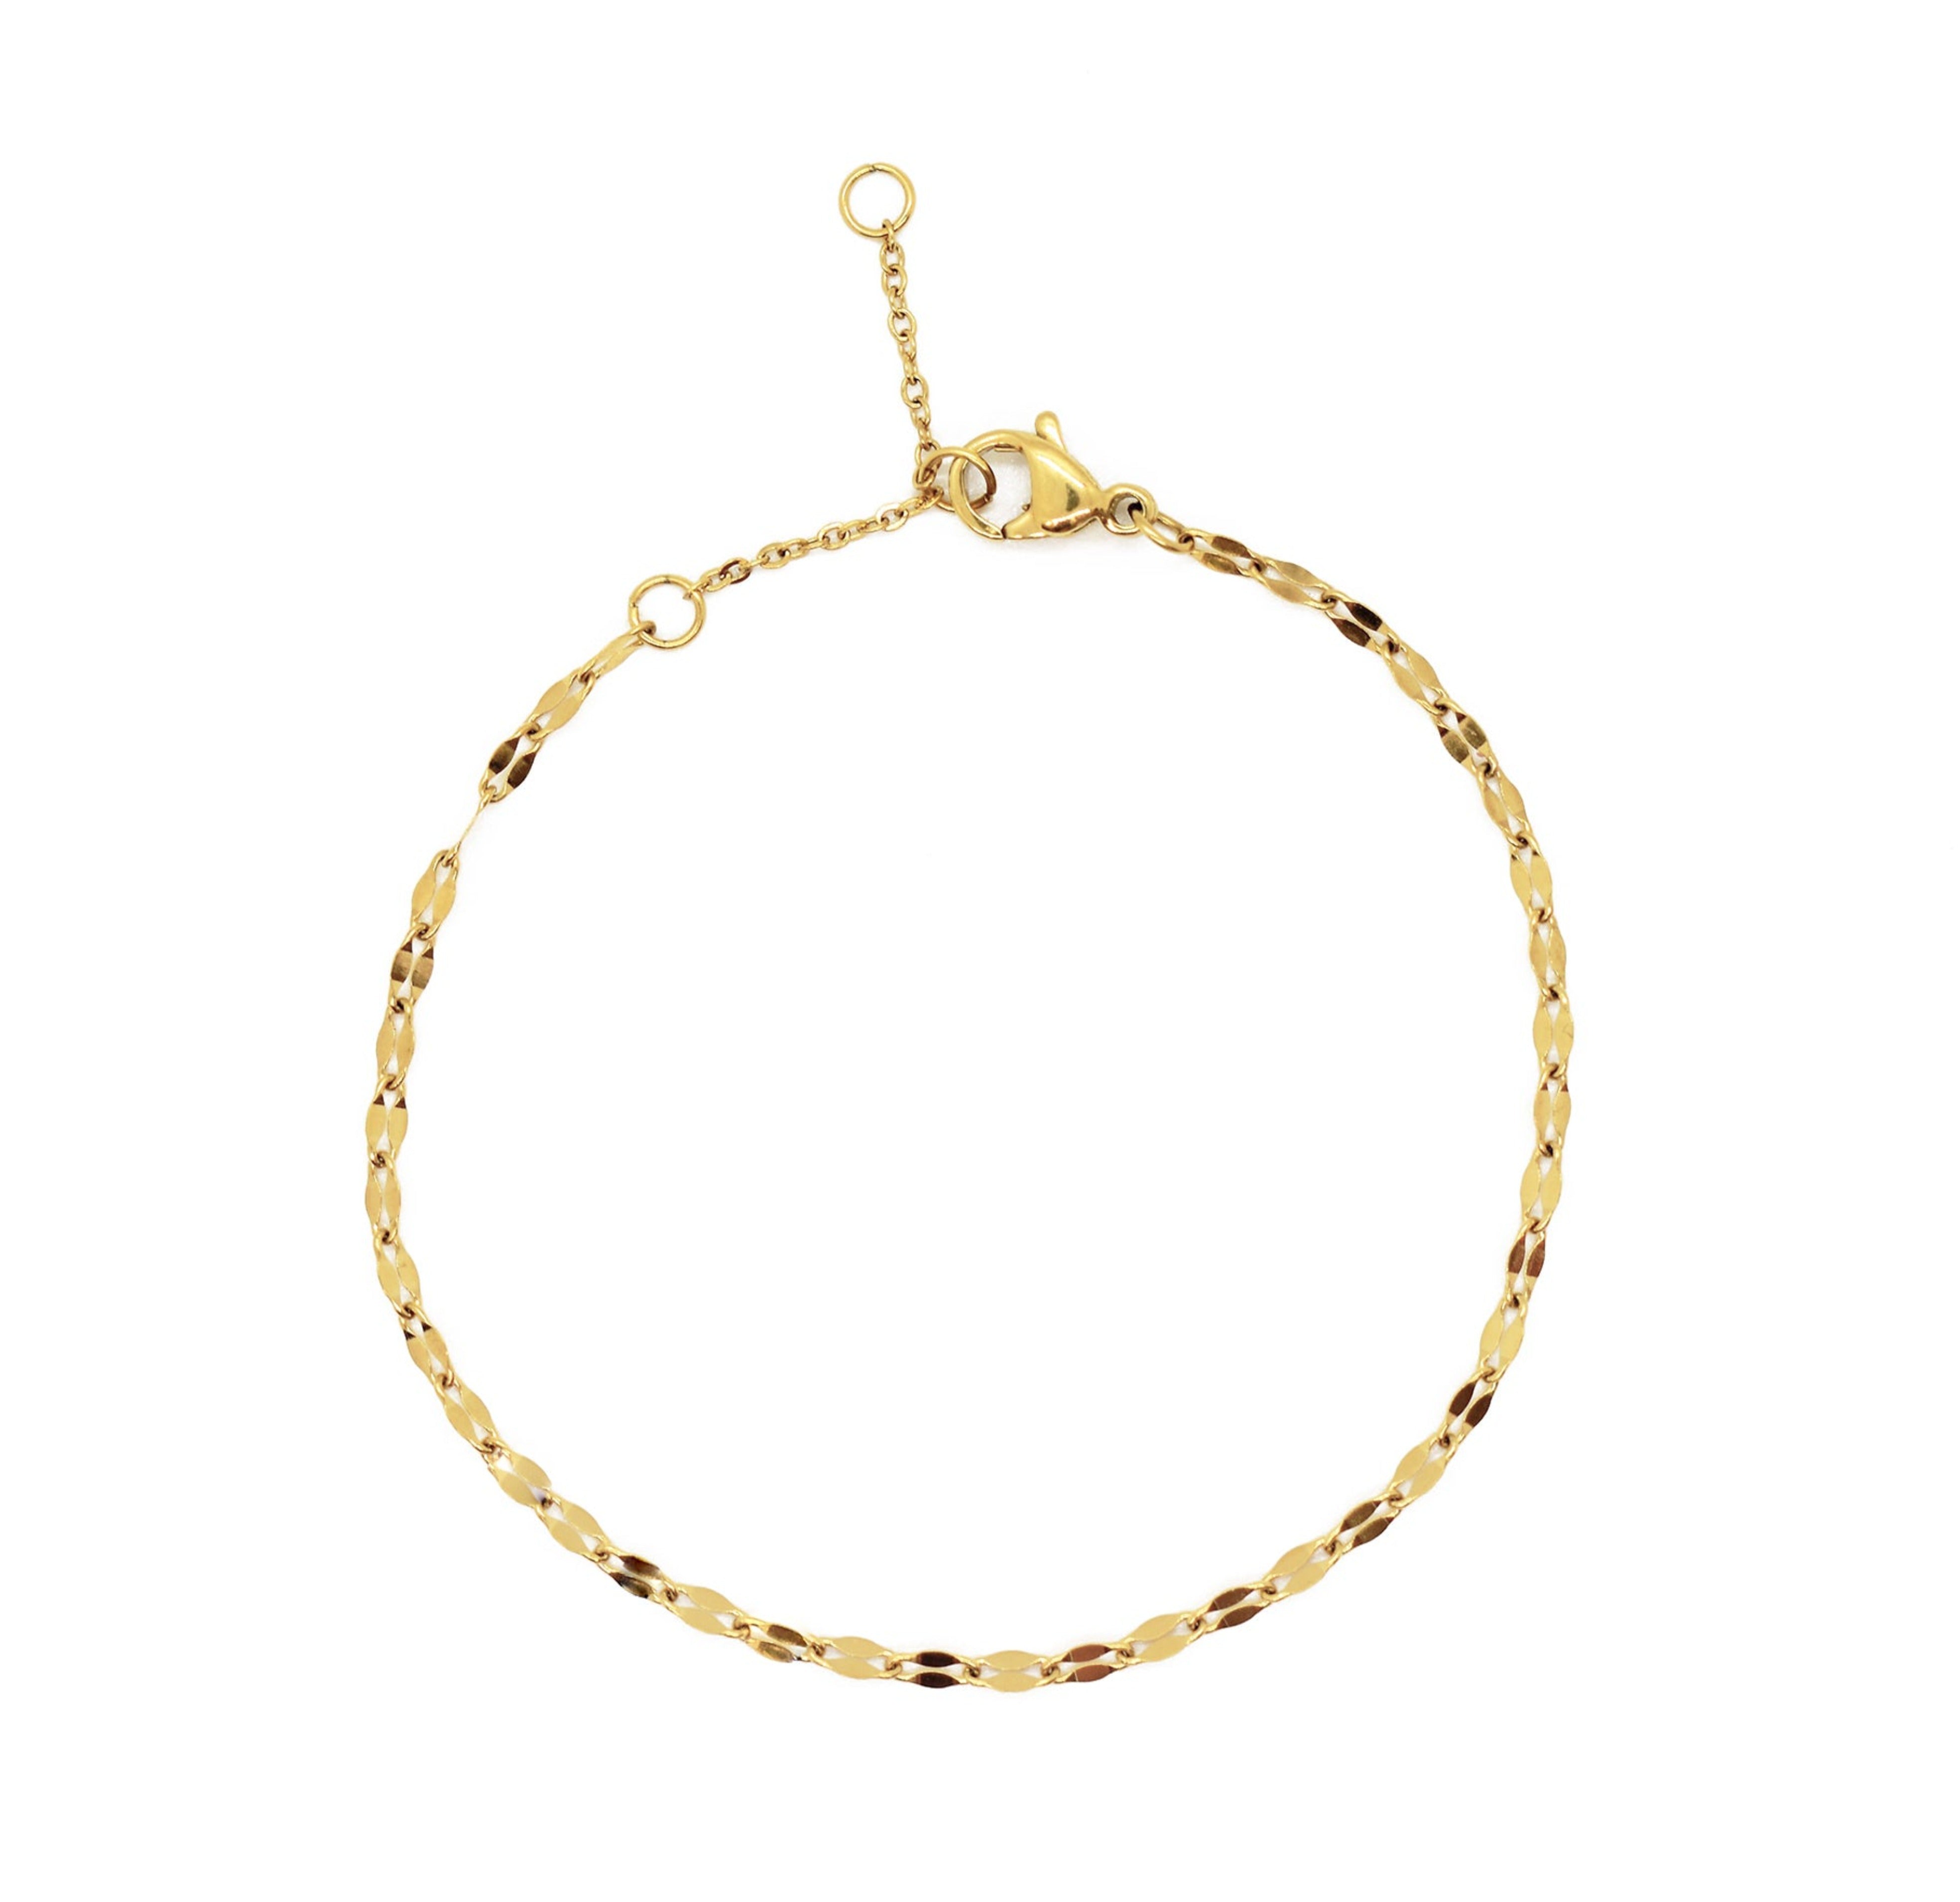 gold dainty lace chain bracelet waterproof jewelry